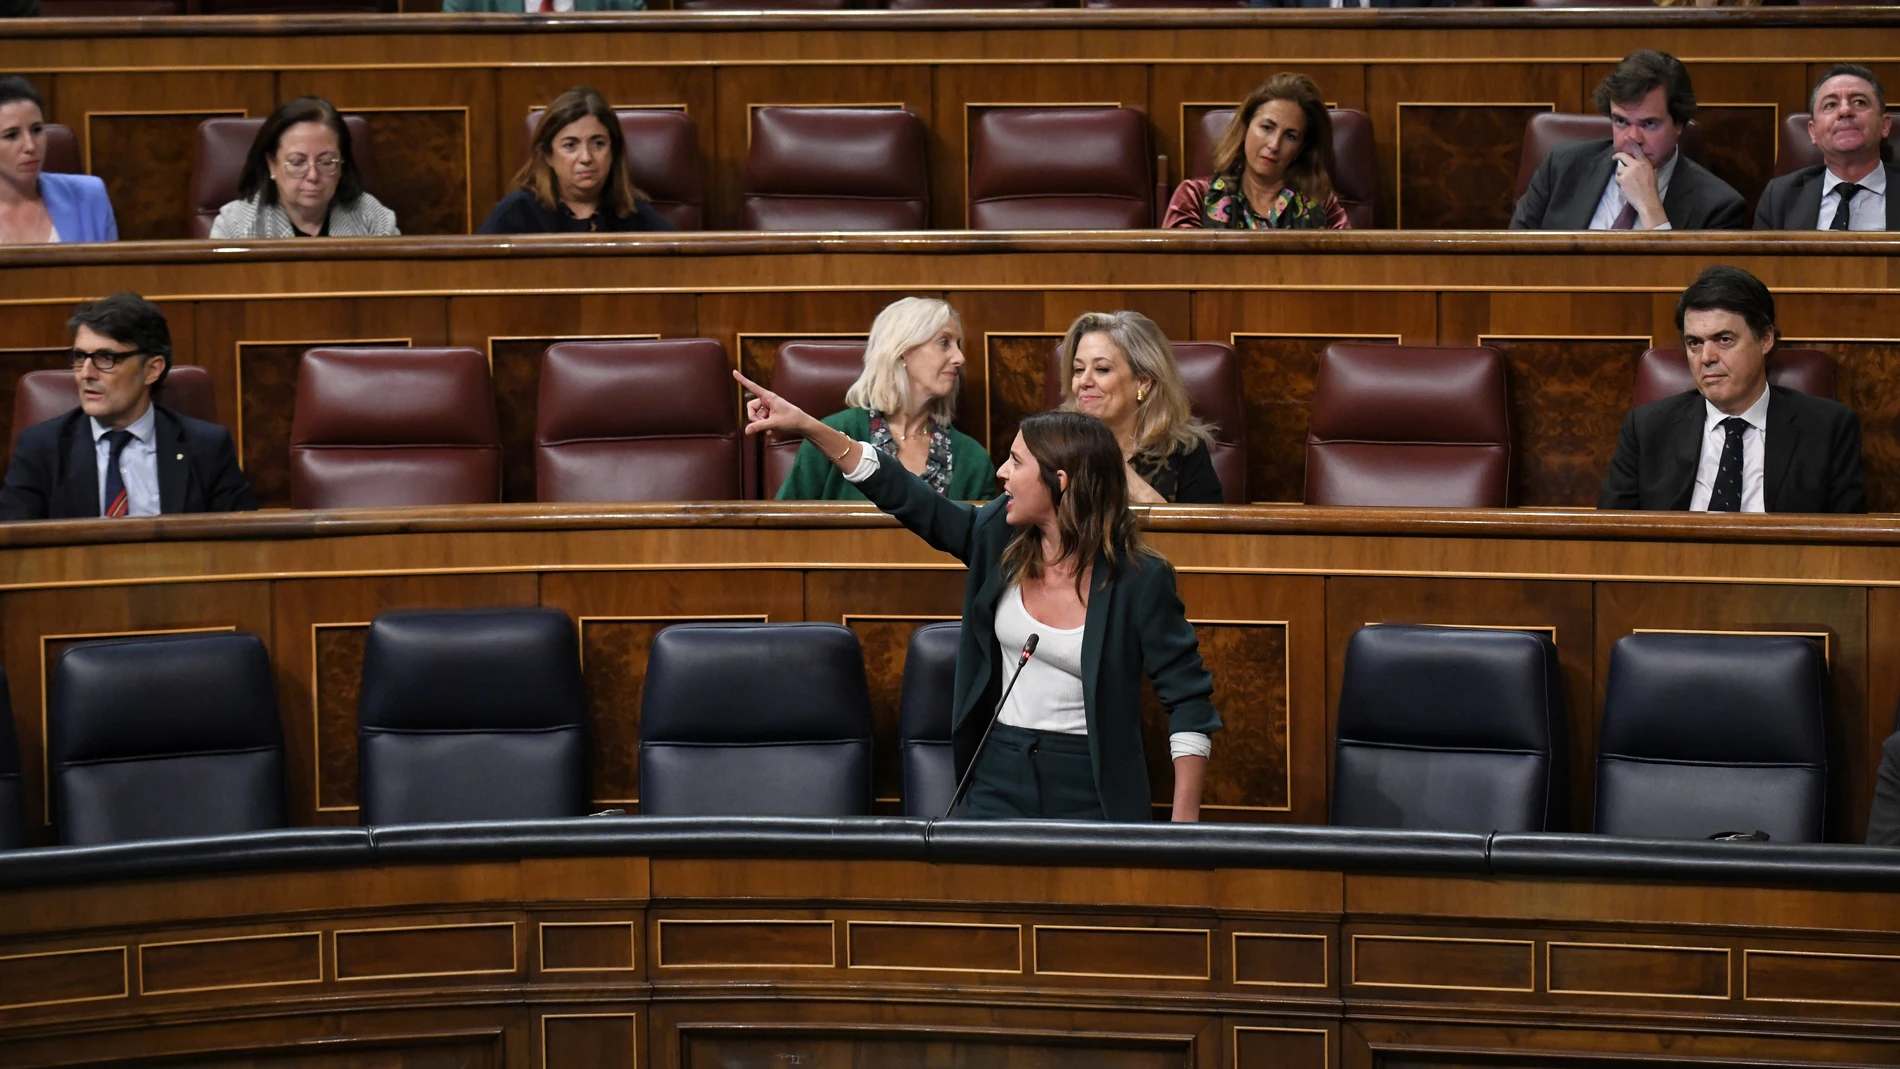 La ministra de Igualdad, Irene Montero, interviene en el Congreso tras el ataque machista de Vox